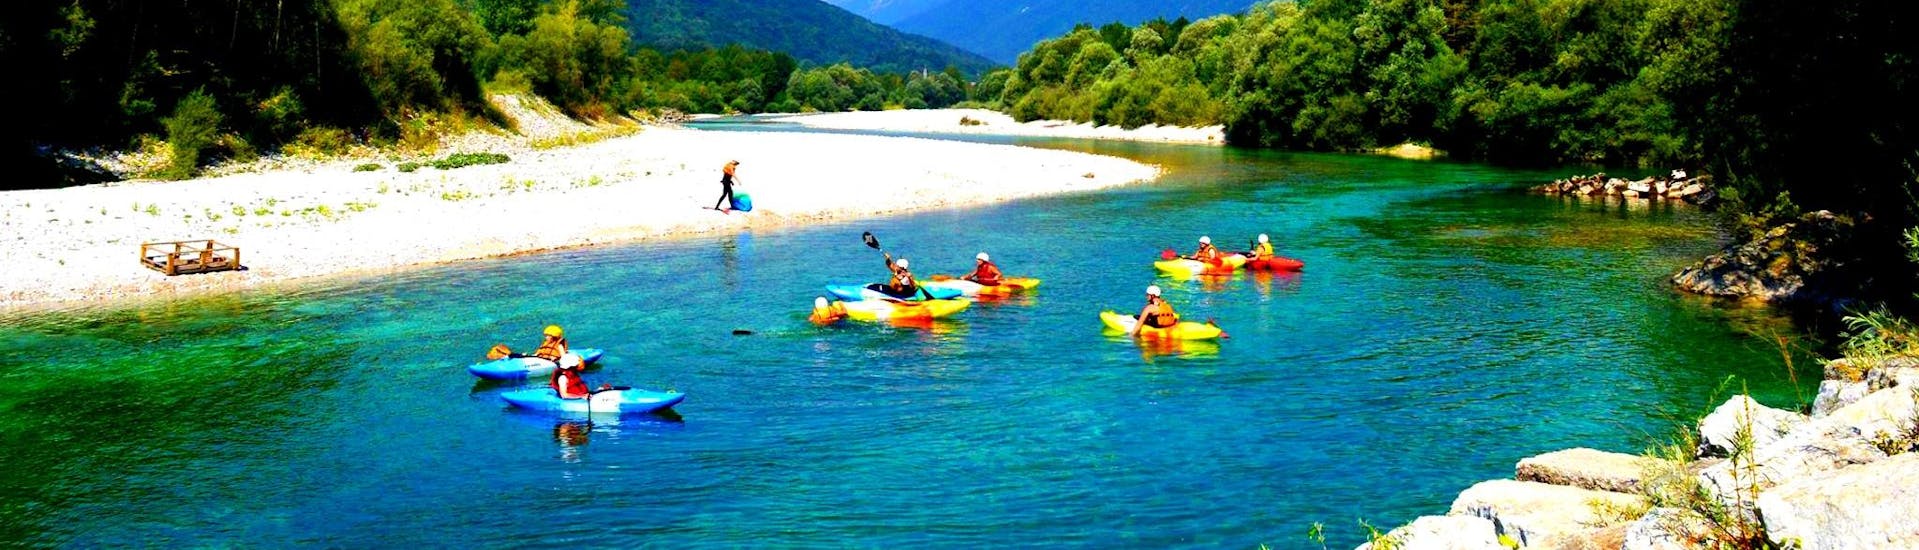 Ein Bild von einigen Teilnehmern in Kajaks während der Kajaktour auf dem Fluss Soča in Kobarid mit Soča Flow Kobarid.